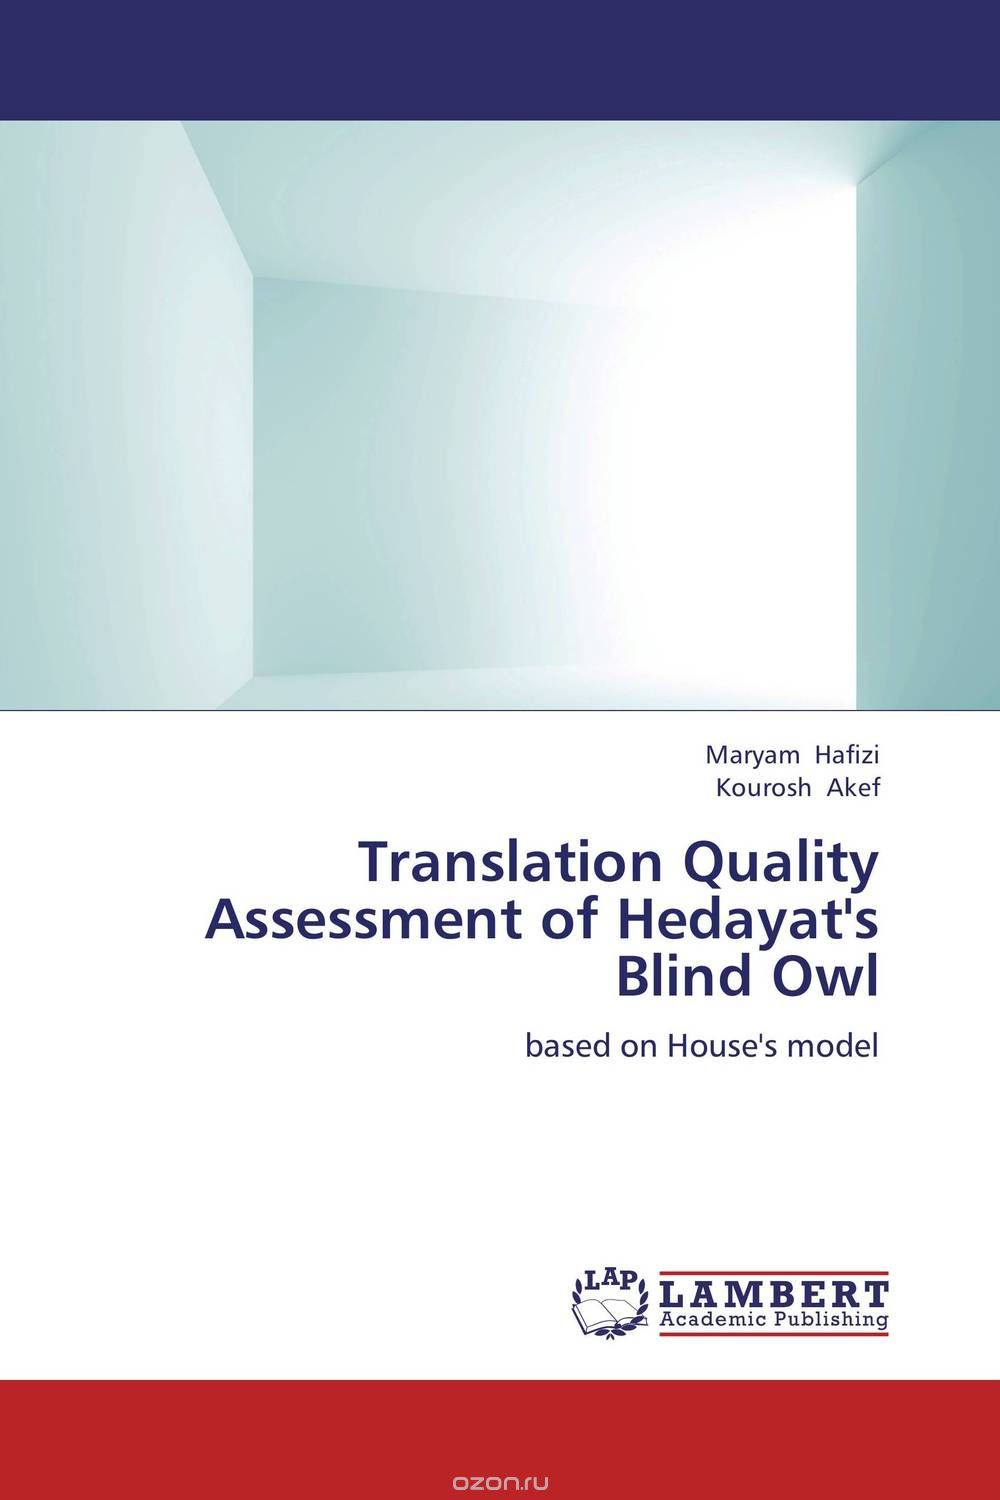 Скачать книгу "Translation Quality Assessment of Hedayat's Blind Owl"